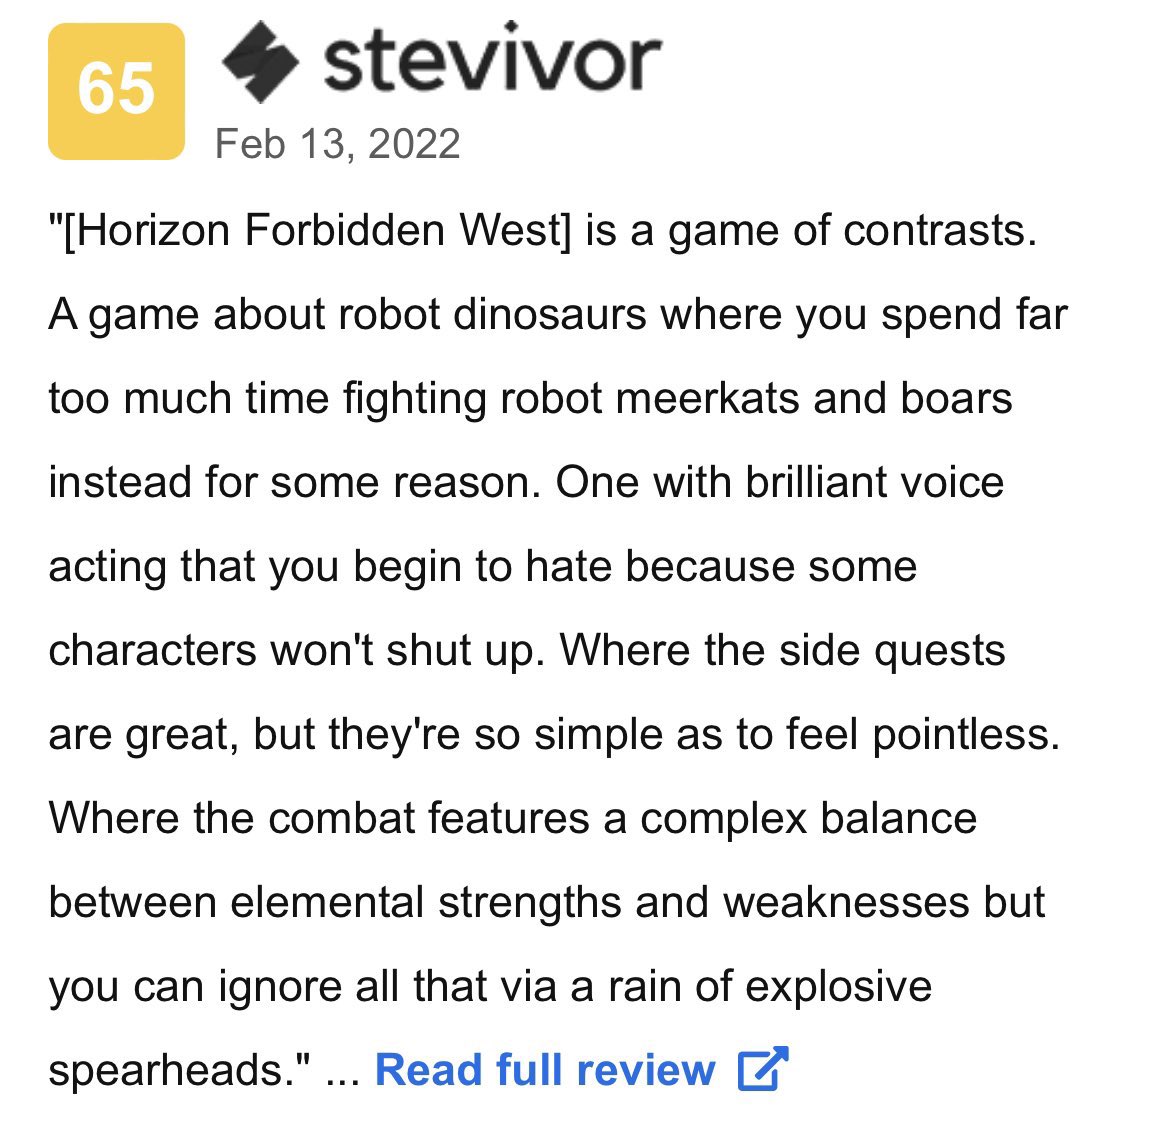 Stevivor's Best PlayStation Game of 2022